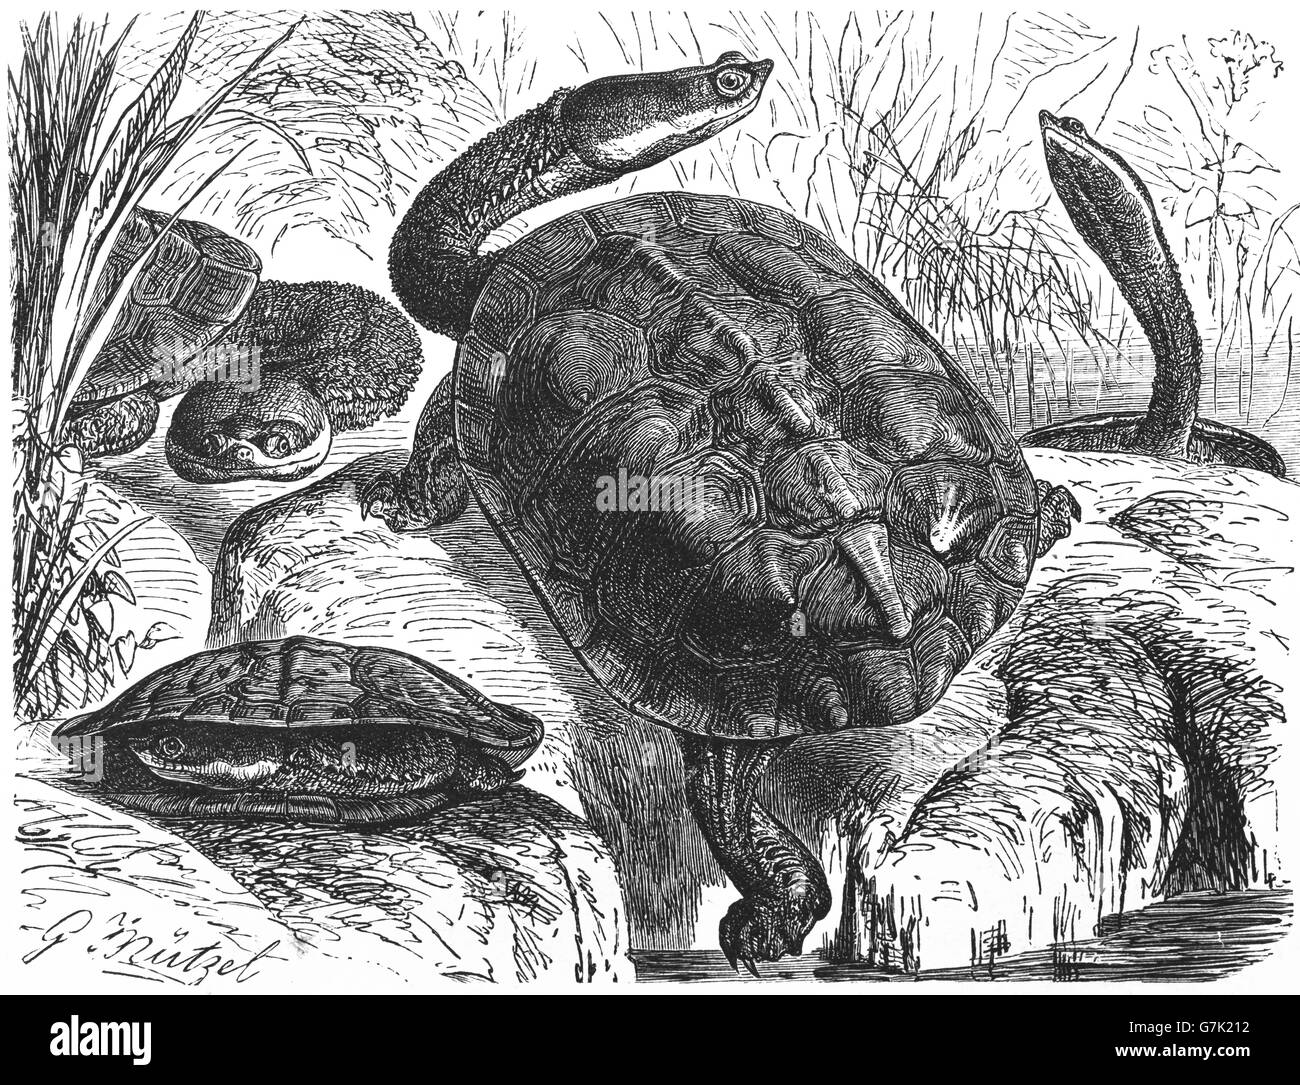 Tortue serpent d'Argentine, d'Amérique du Sud tortue serpent, Hydromedusa tectifera, illustration de livre daté 1904 Banque D'Images